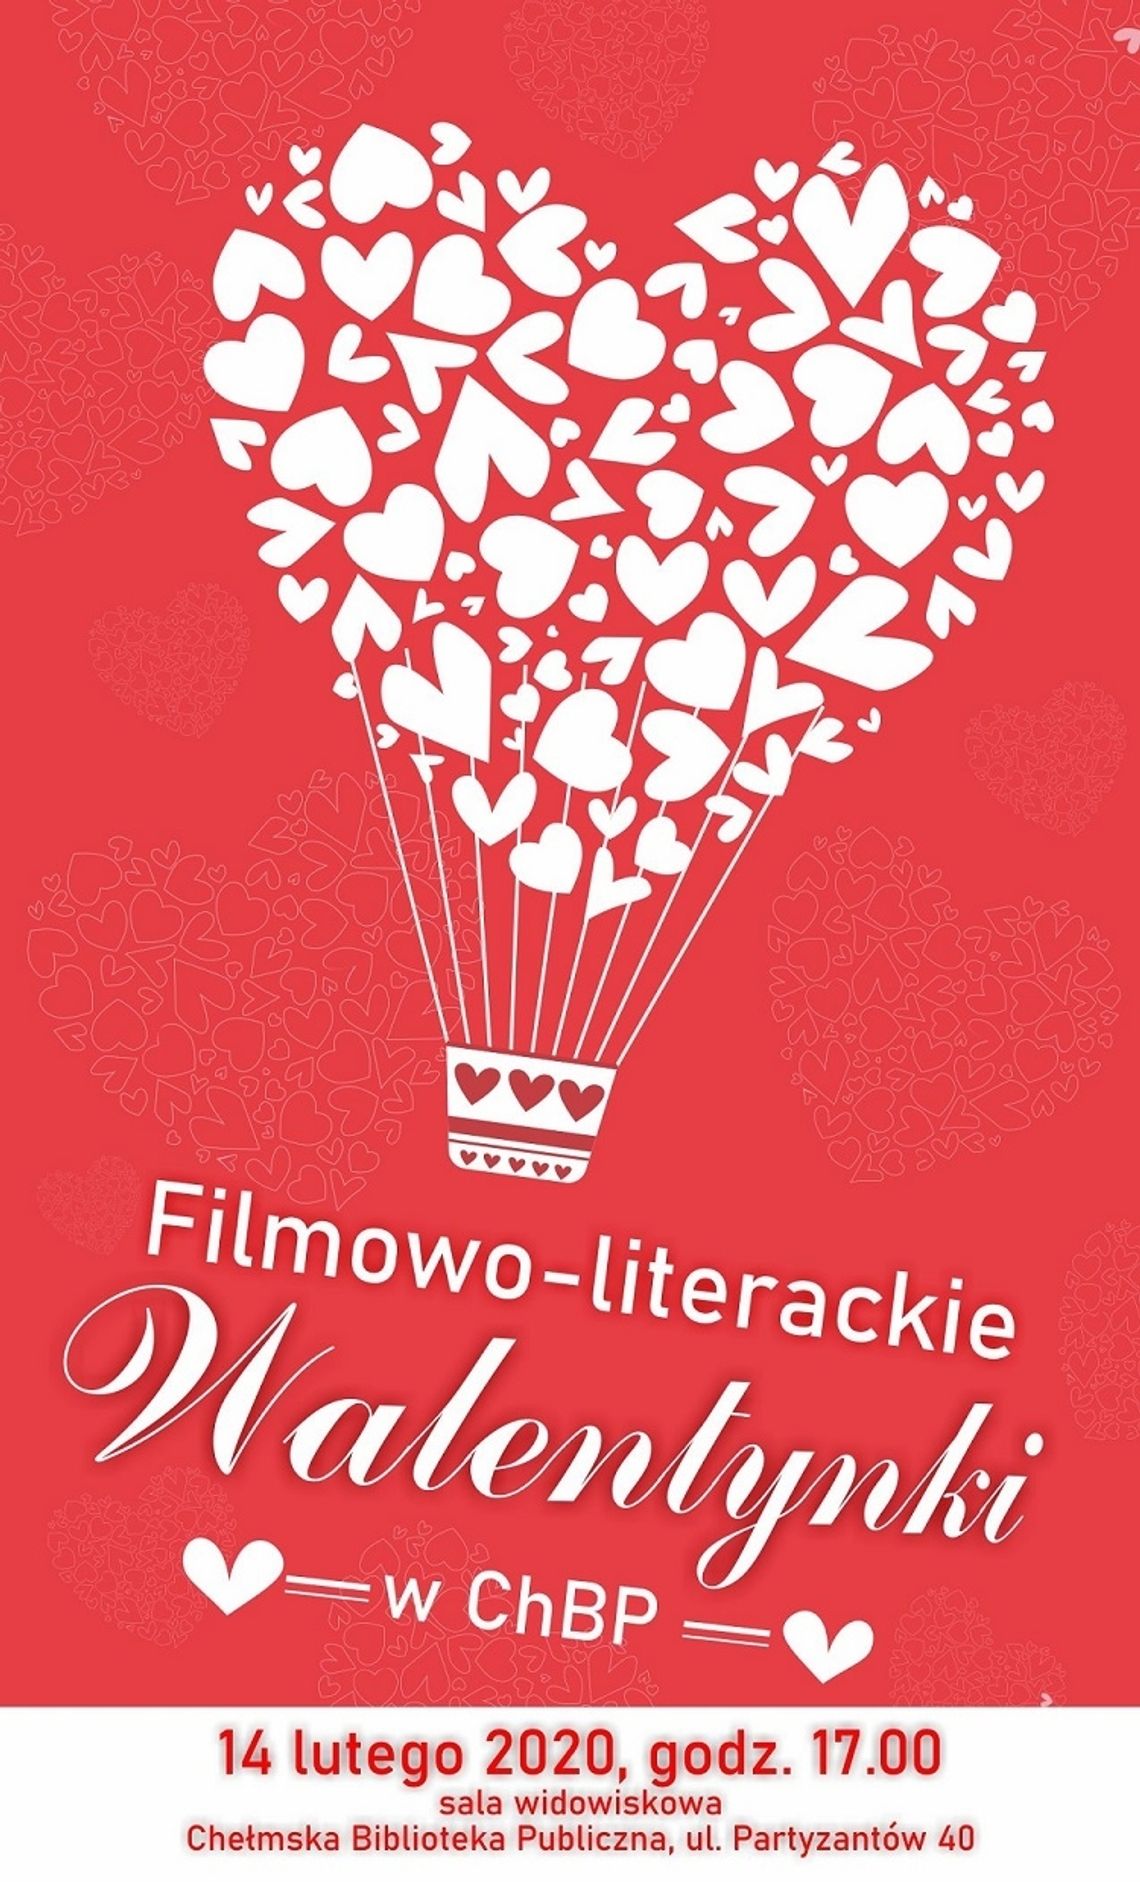 Filmowo-literackie Walentynki w ChBP